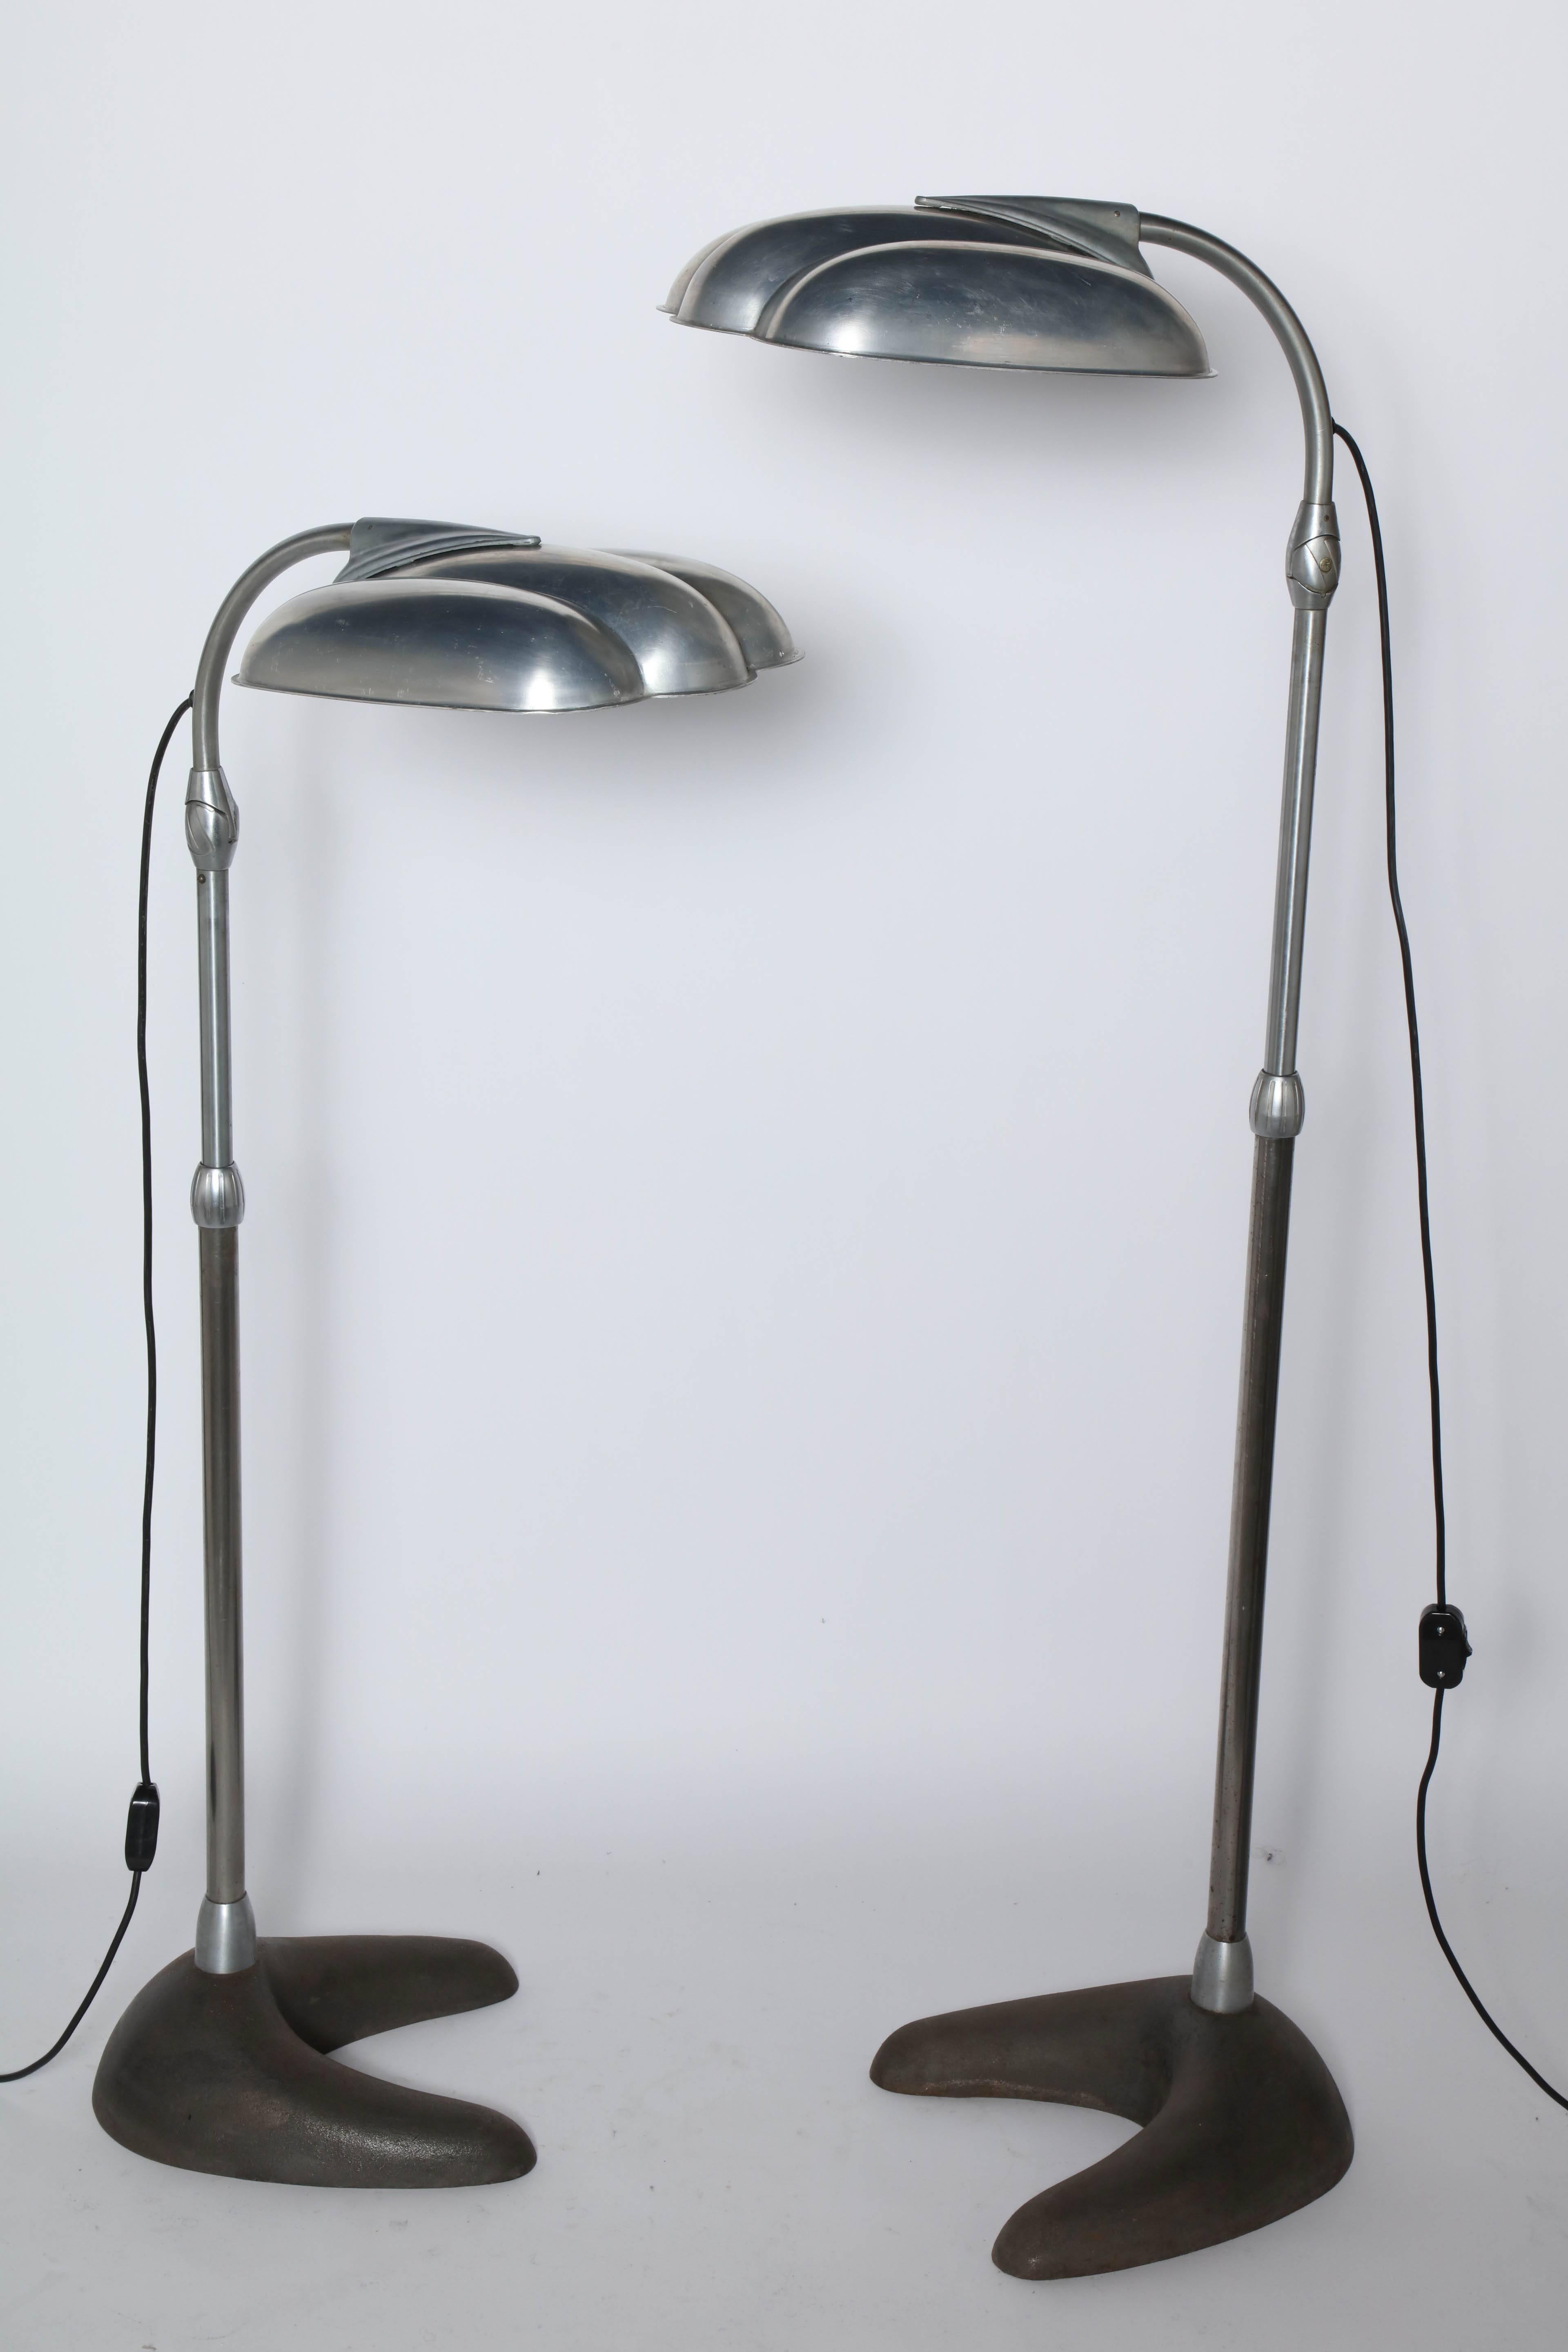 Sperti Sunlamp Inc. verstellbare Stehleuchte aus Aluminium und Gusseisen, im Stil von Raymond Loewy, CIRCA 1940. Ausgestattet mit beweglichen, maschinell bearbeiteten, gerillten Clam Shell Aluminium-Reflektorschirmen, neigbarem Lampenkopf,